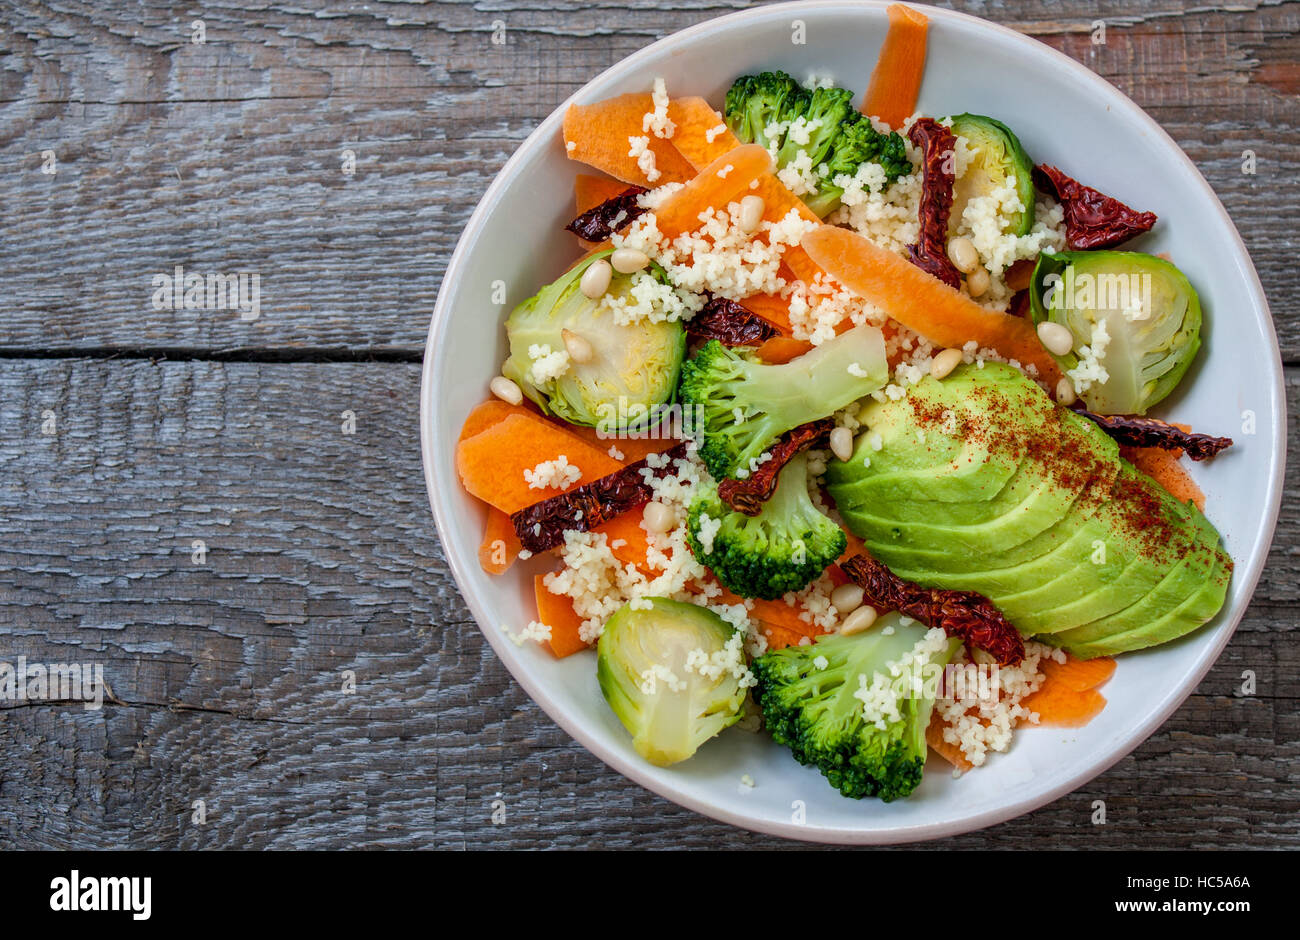 Couscous mit Avocados, Brokkoli, Karotten, Rosenkohl, getrockneten Tomaten und Pinienkernen. . Perfekt für die Detox-Diät oder einfach nur eine gesunde Mahlzeit.  Liebe Stockfoto